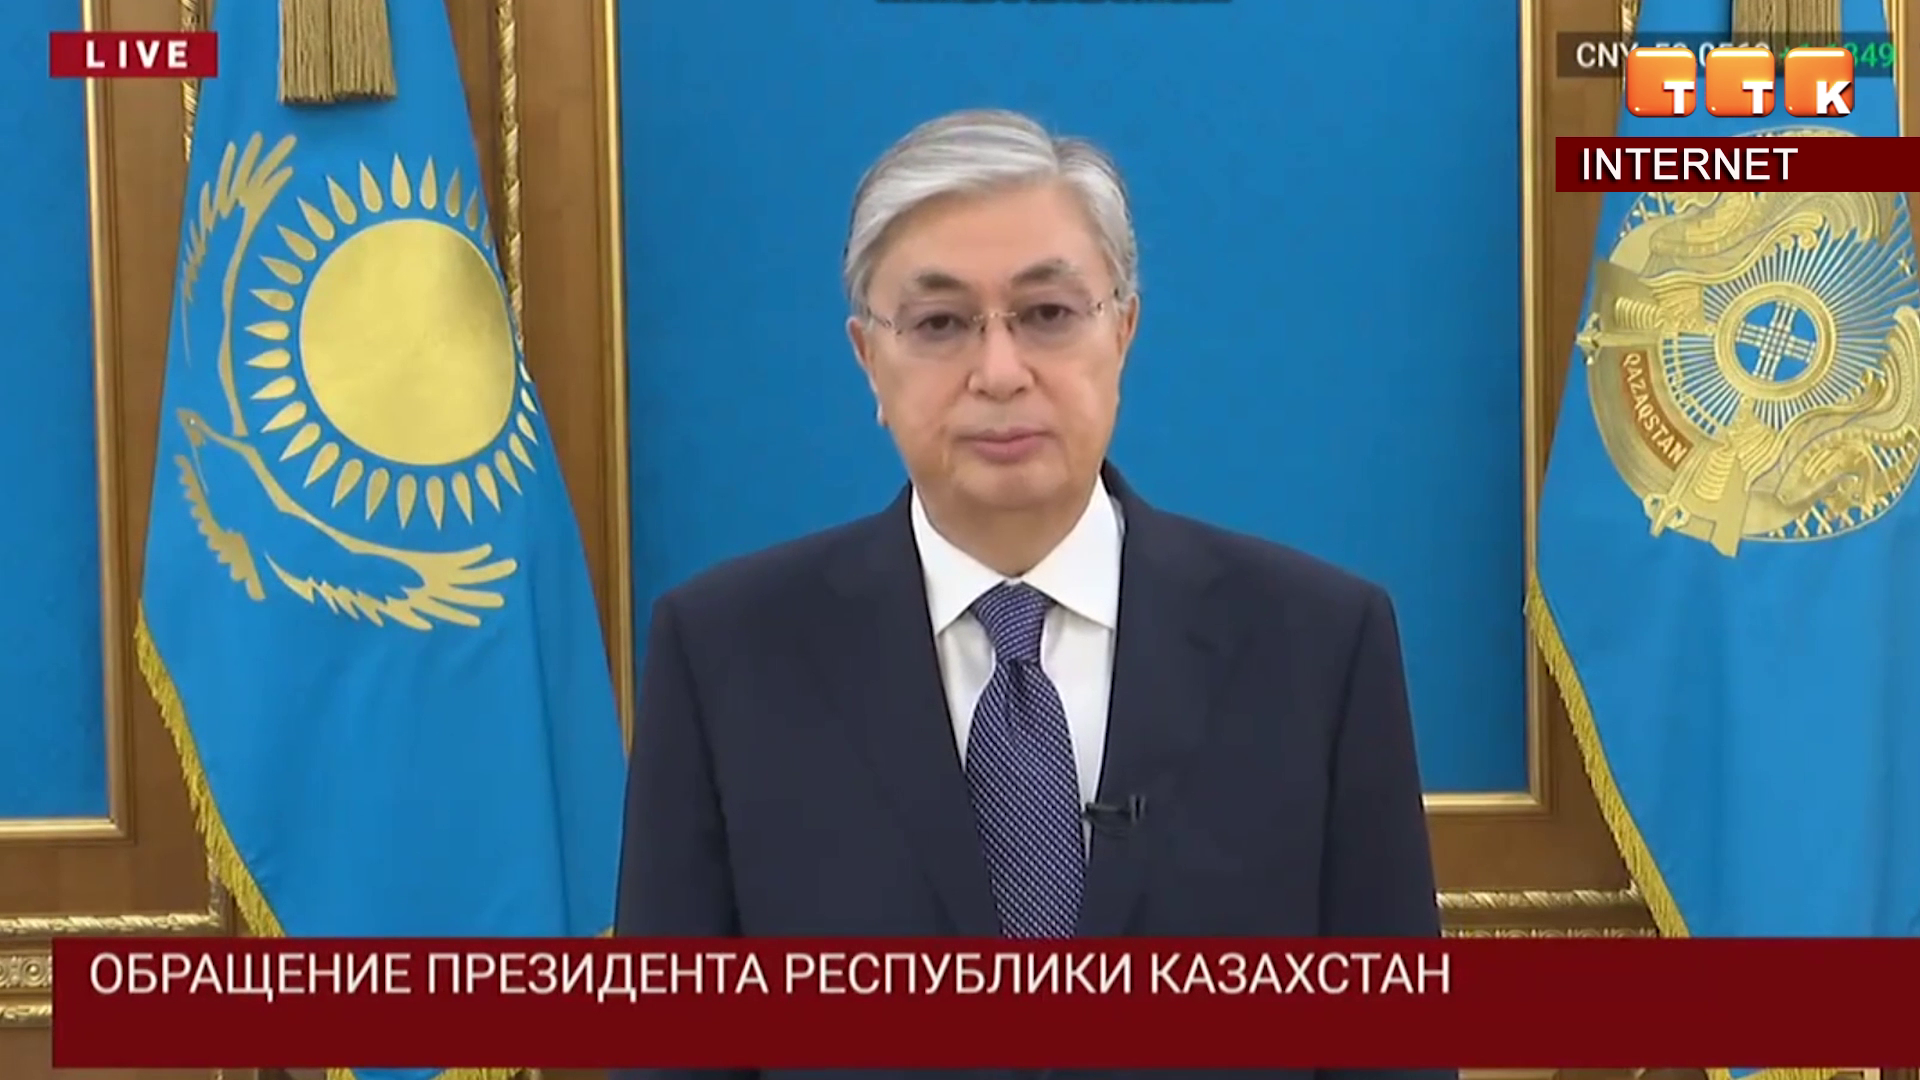 В Казахстане введено чрезвычайное положение